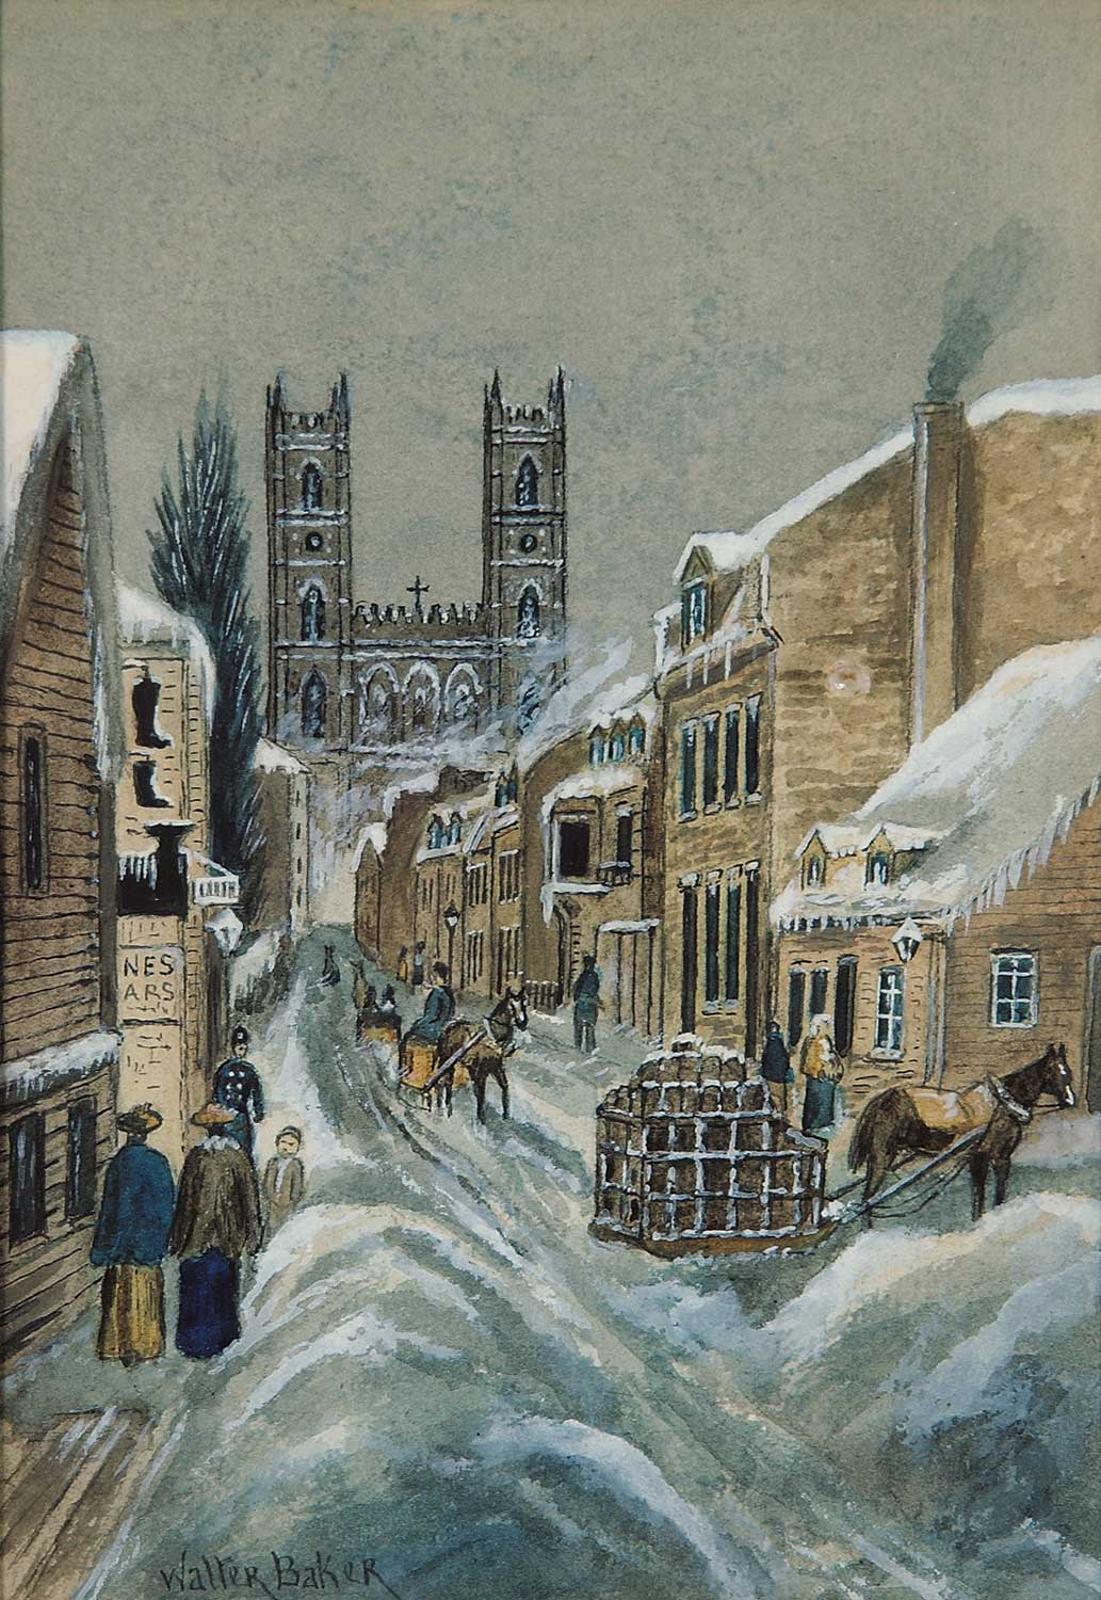 Walter Baker (1859-1912) - Untitled - Main Street in Winter